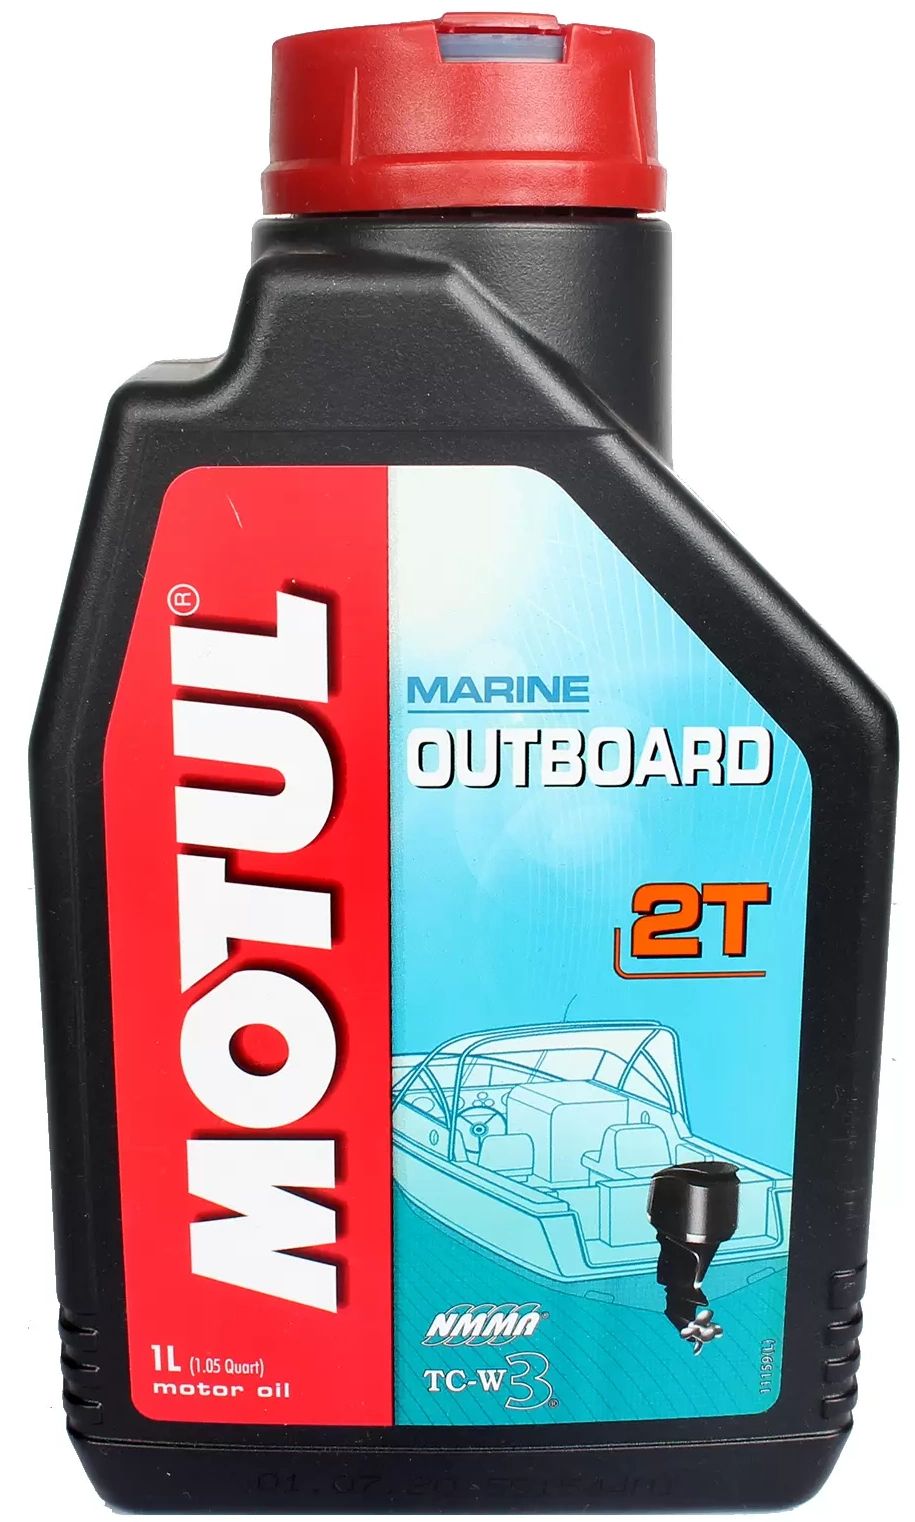 Motul outboard tech 2t. Motul outboard 2t 1л.